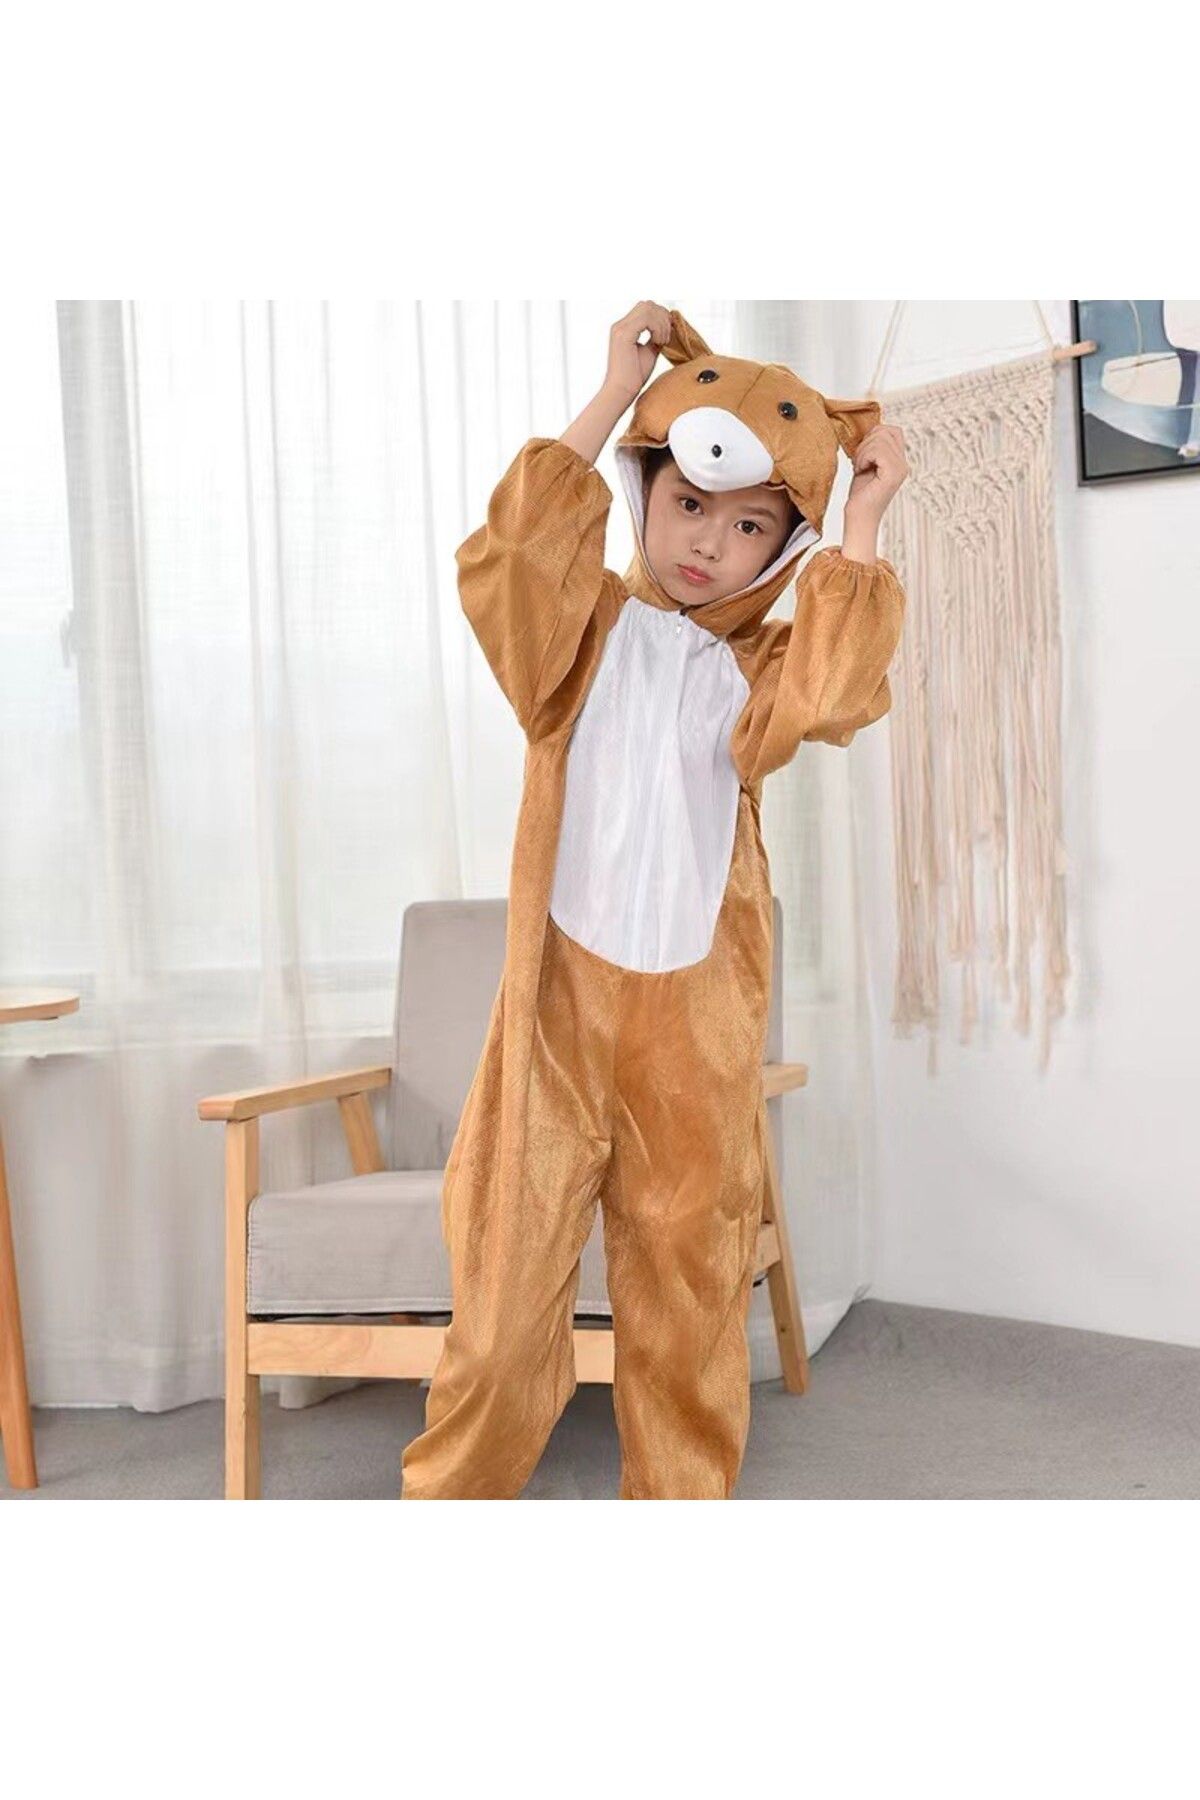 Skygo Çocuk Ayı Kostümü - Maymun Kostümü 2-3 Yaş 80 cm